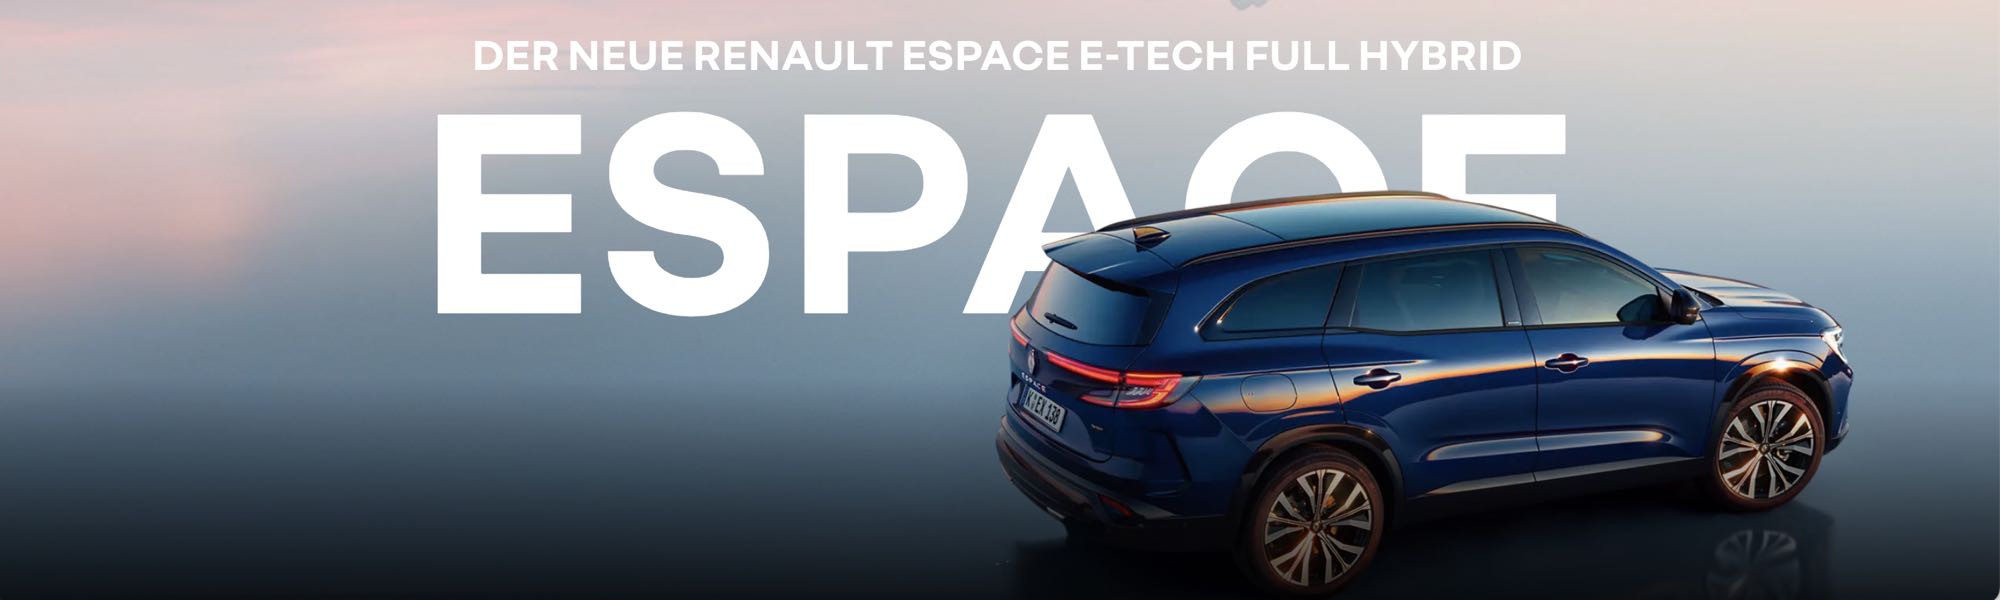 Der neue Renault Espace